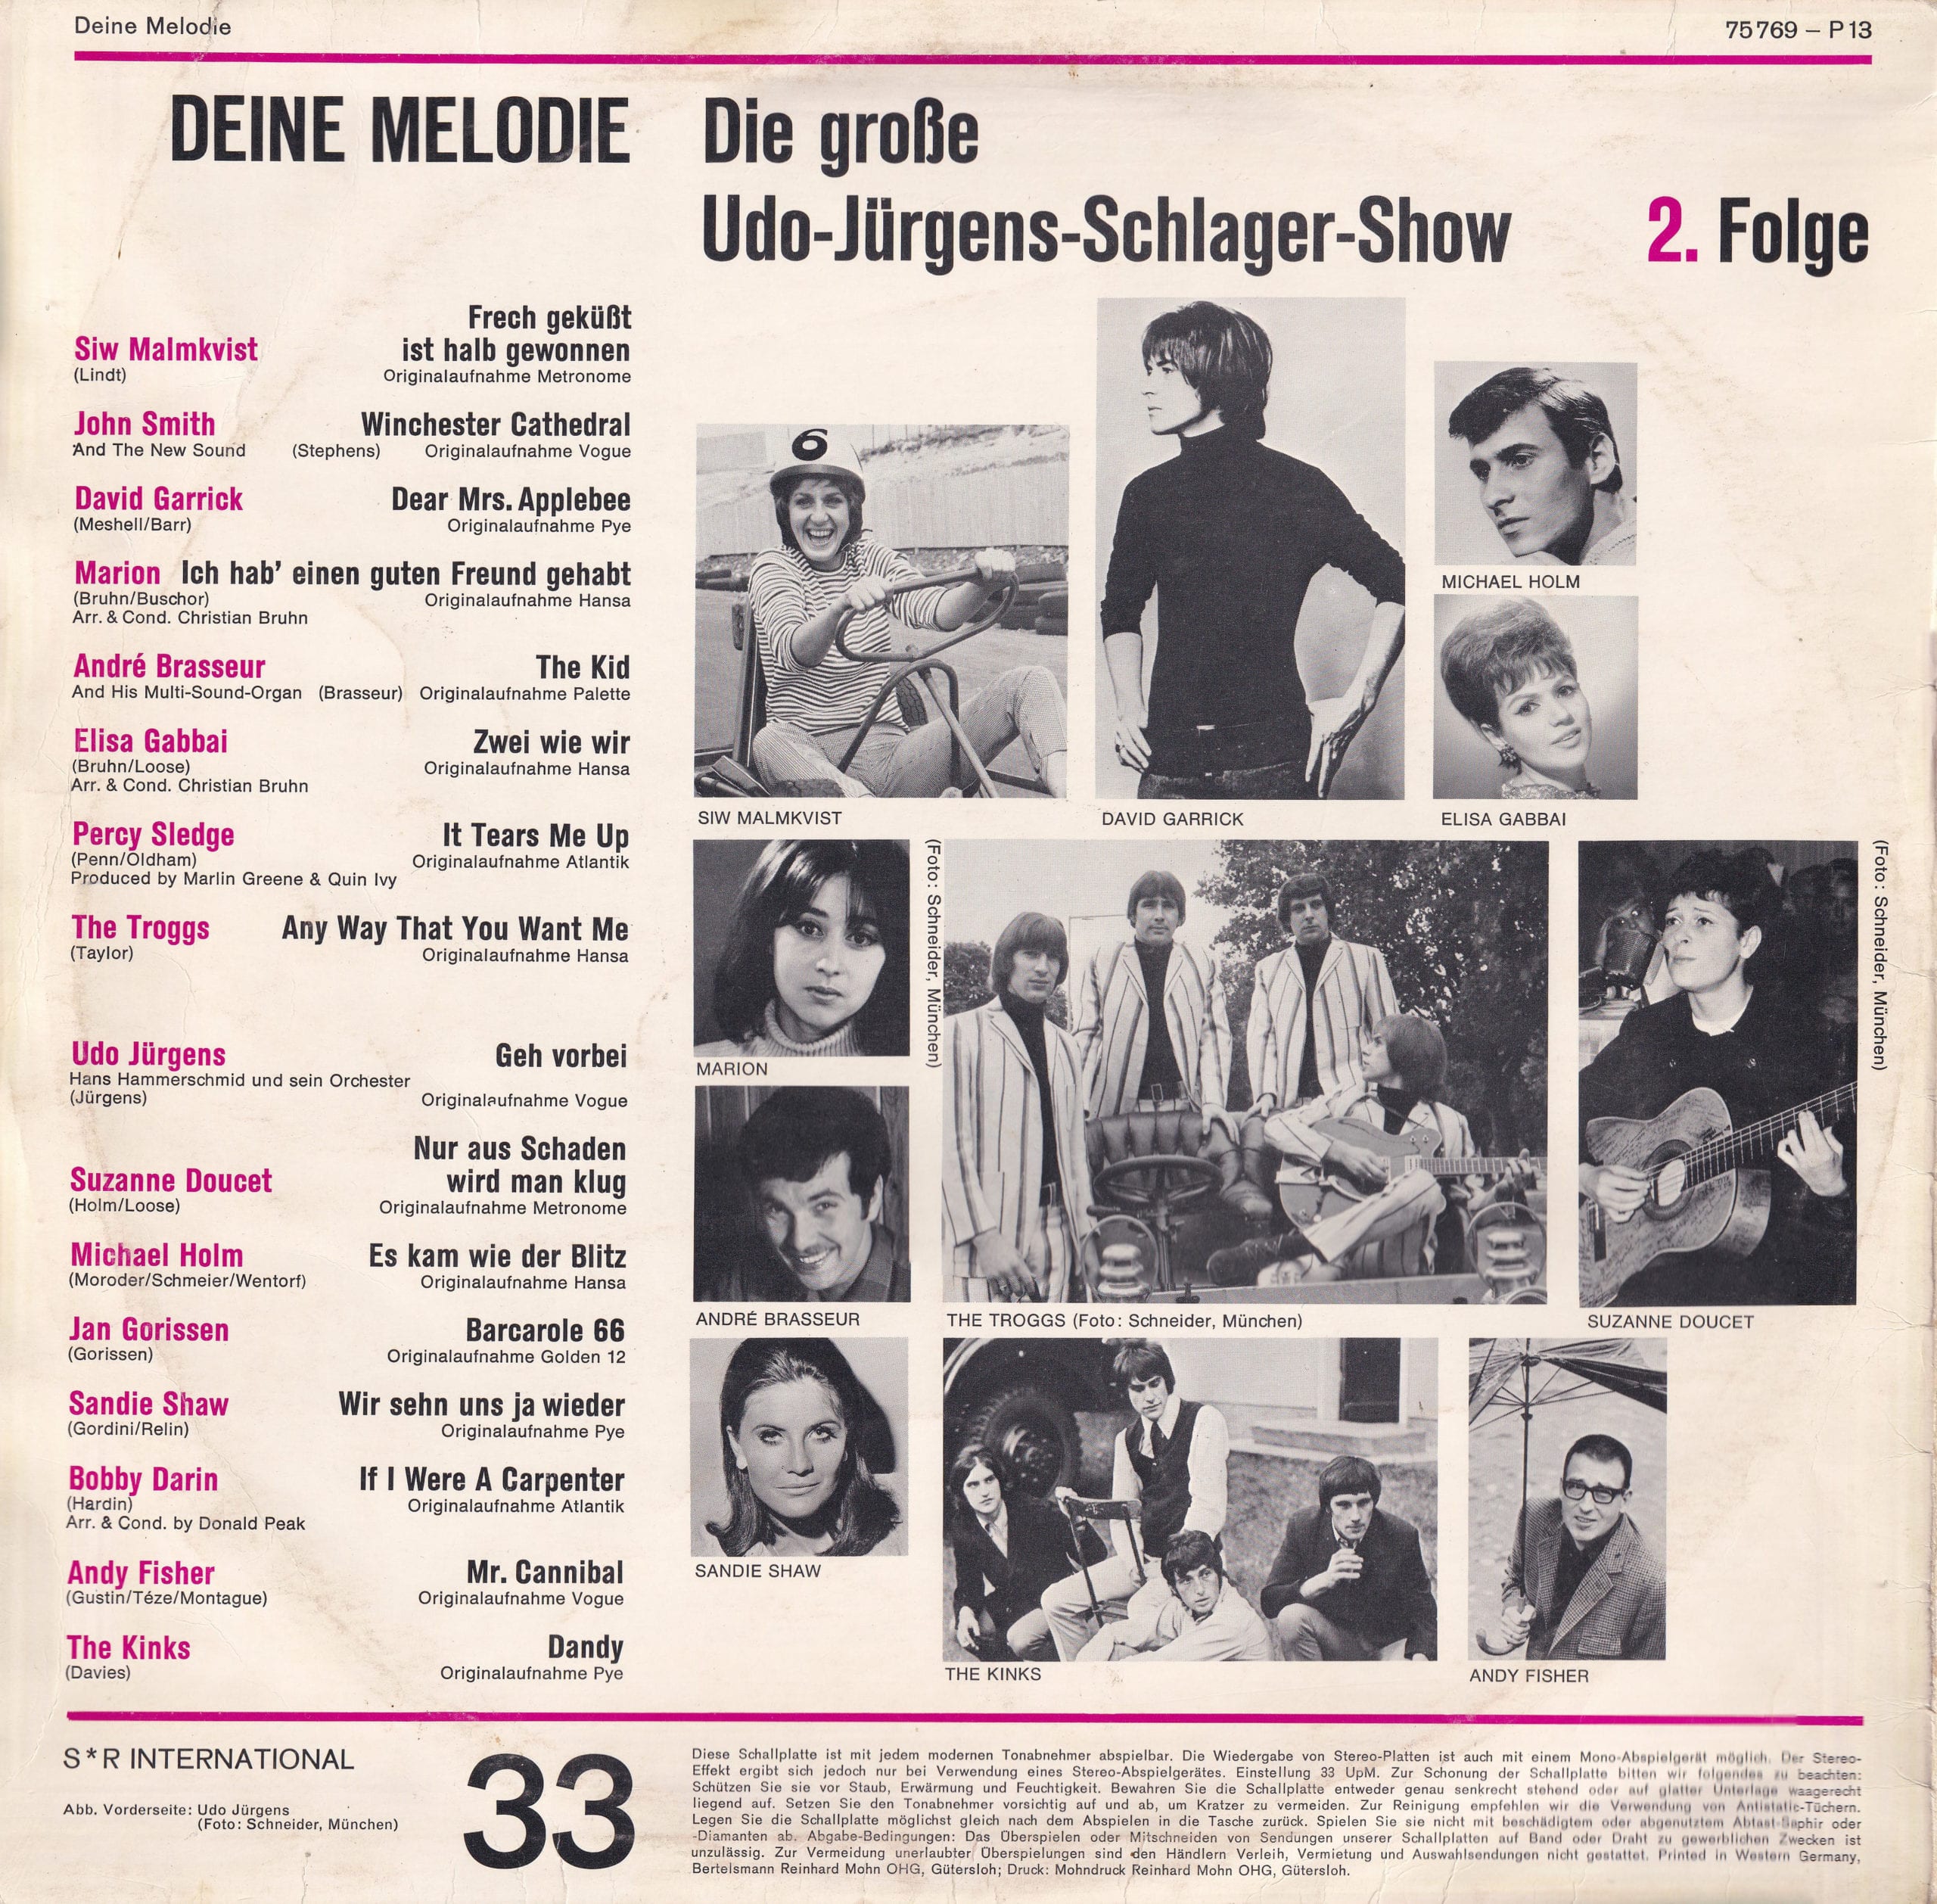 Udo Jürgens Schlager Show, 2. Folge – 2